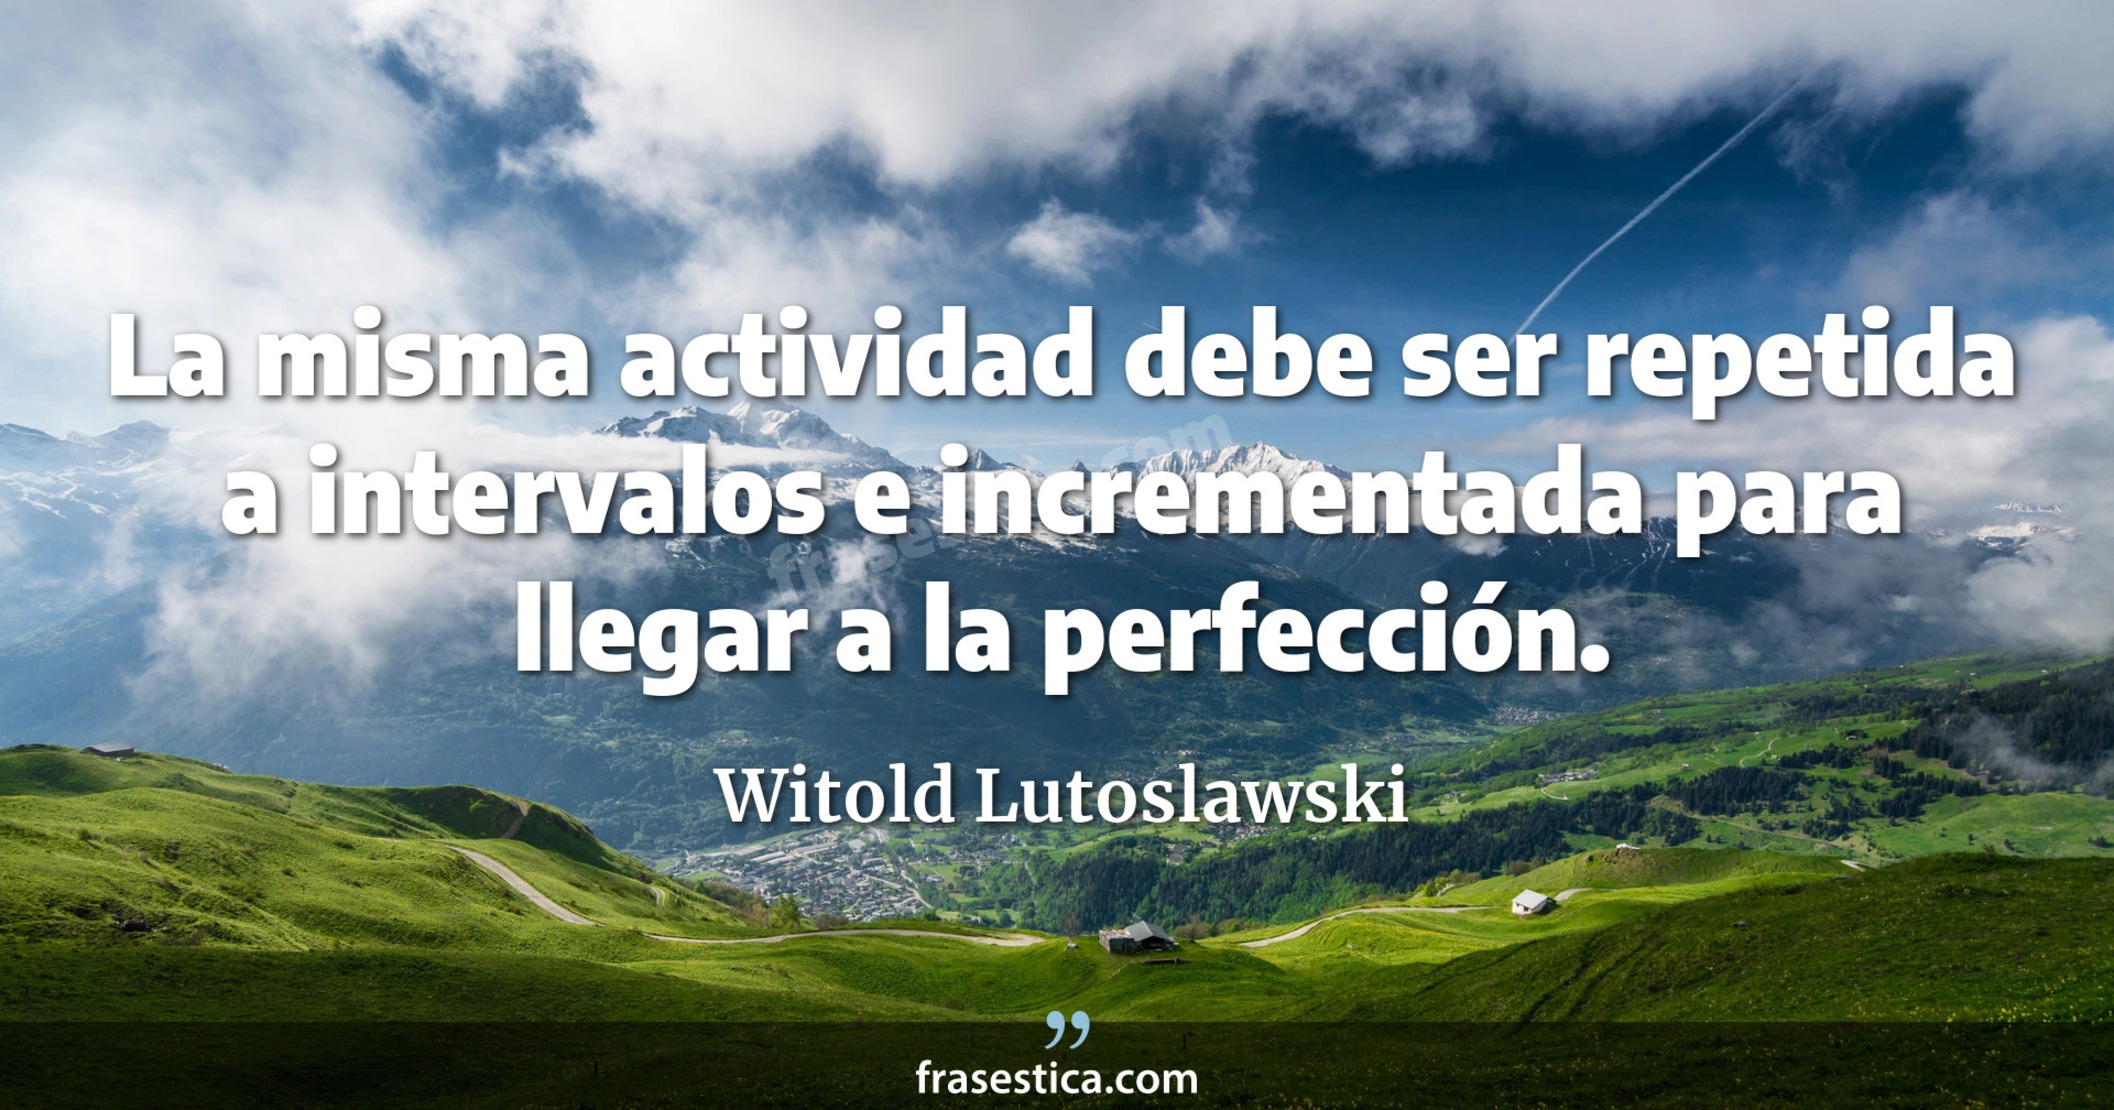 La misma actividad debe ser repetida a intervalos e incrementada para llegar a la perfección. - Witold Lutoslawski